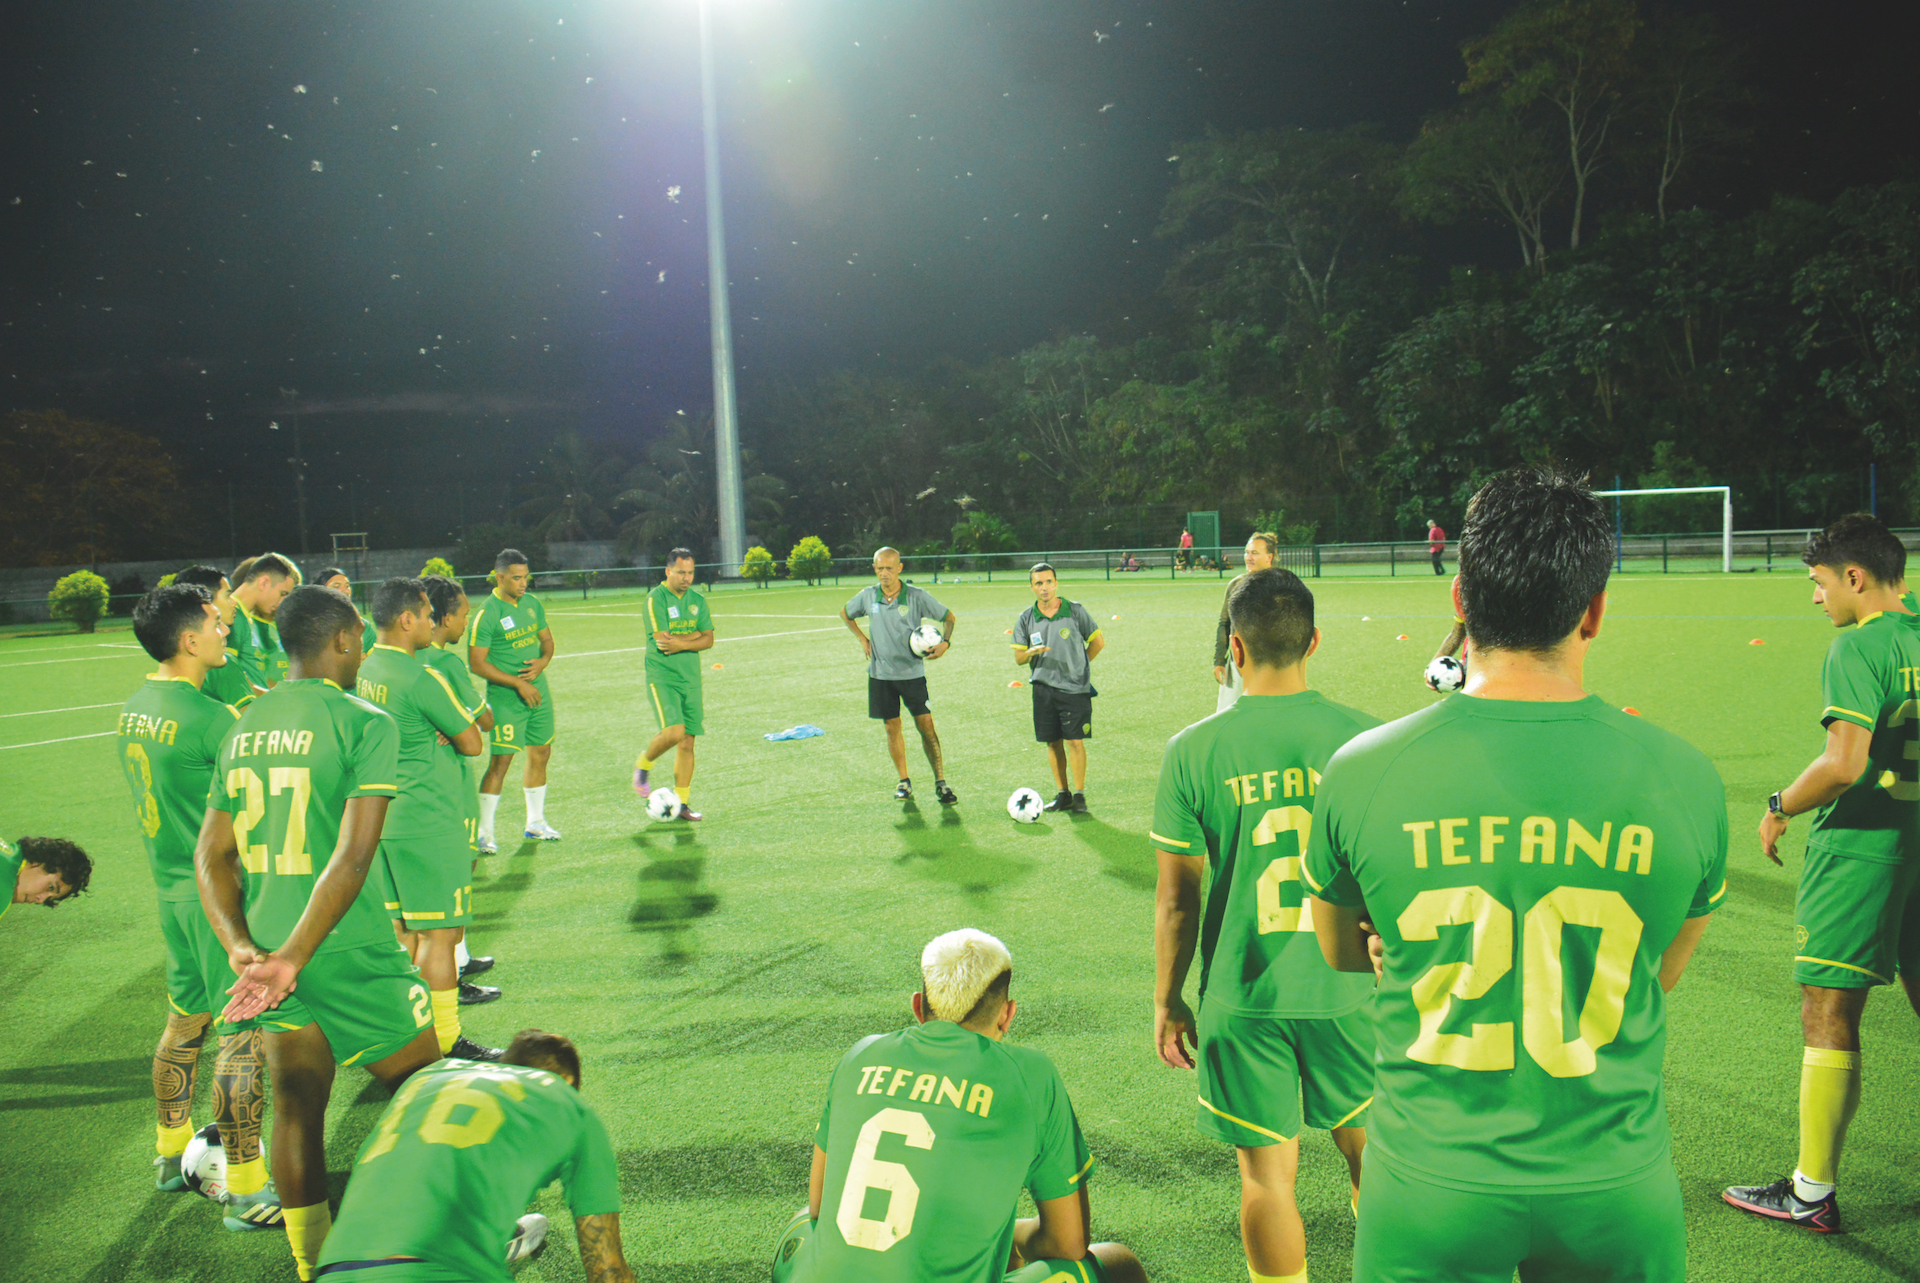 Les joueurs de Tefana avant de débuter leur séance d'entrainement de mardi sur leur terrain synthétique de Puurai.